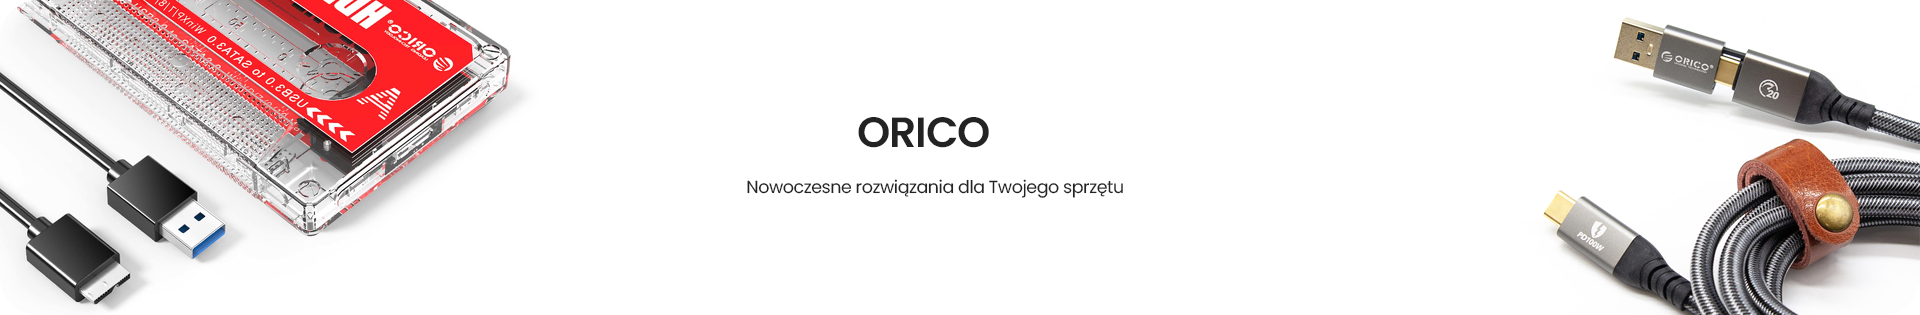 Produkty Orico